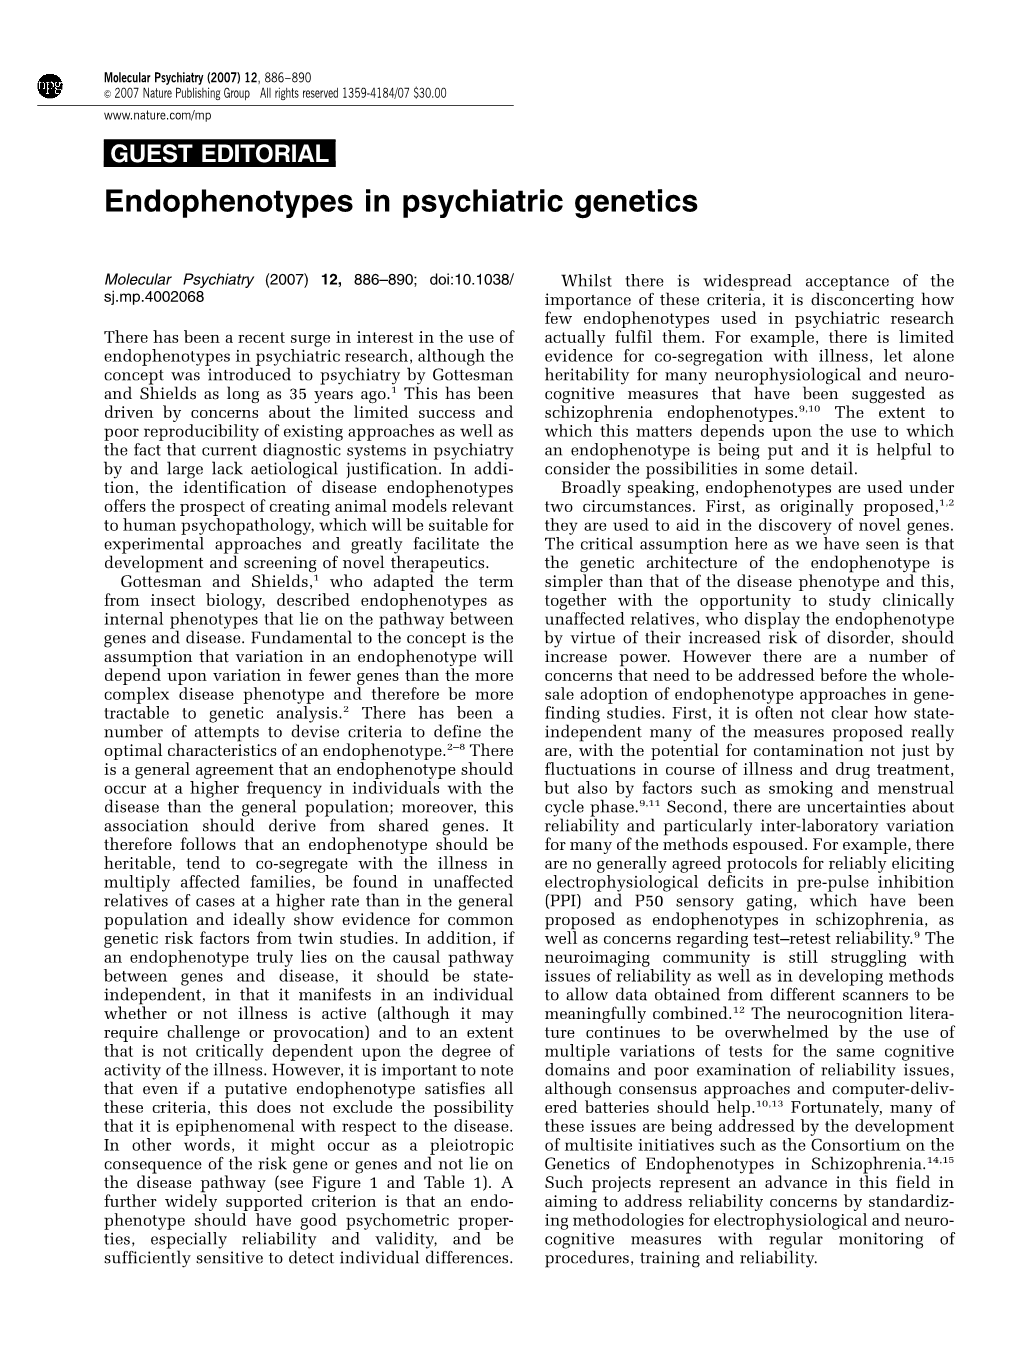 Endophenotypes in Psychiatric Genetics